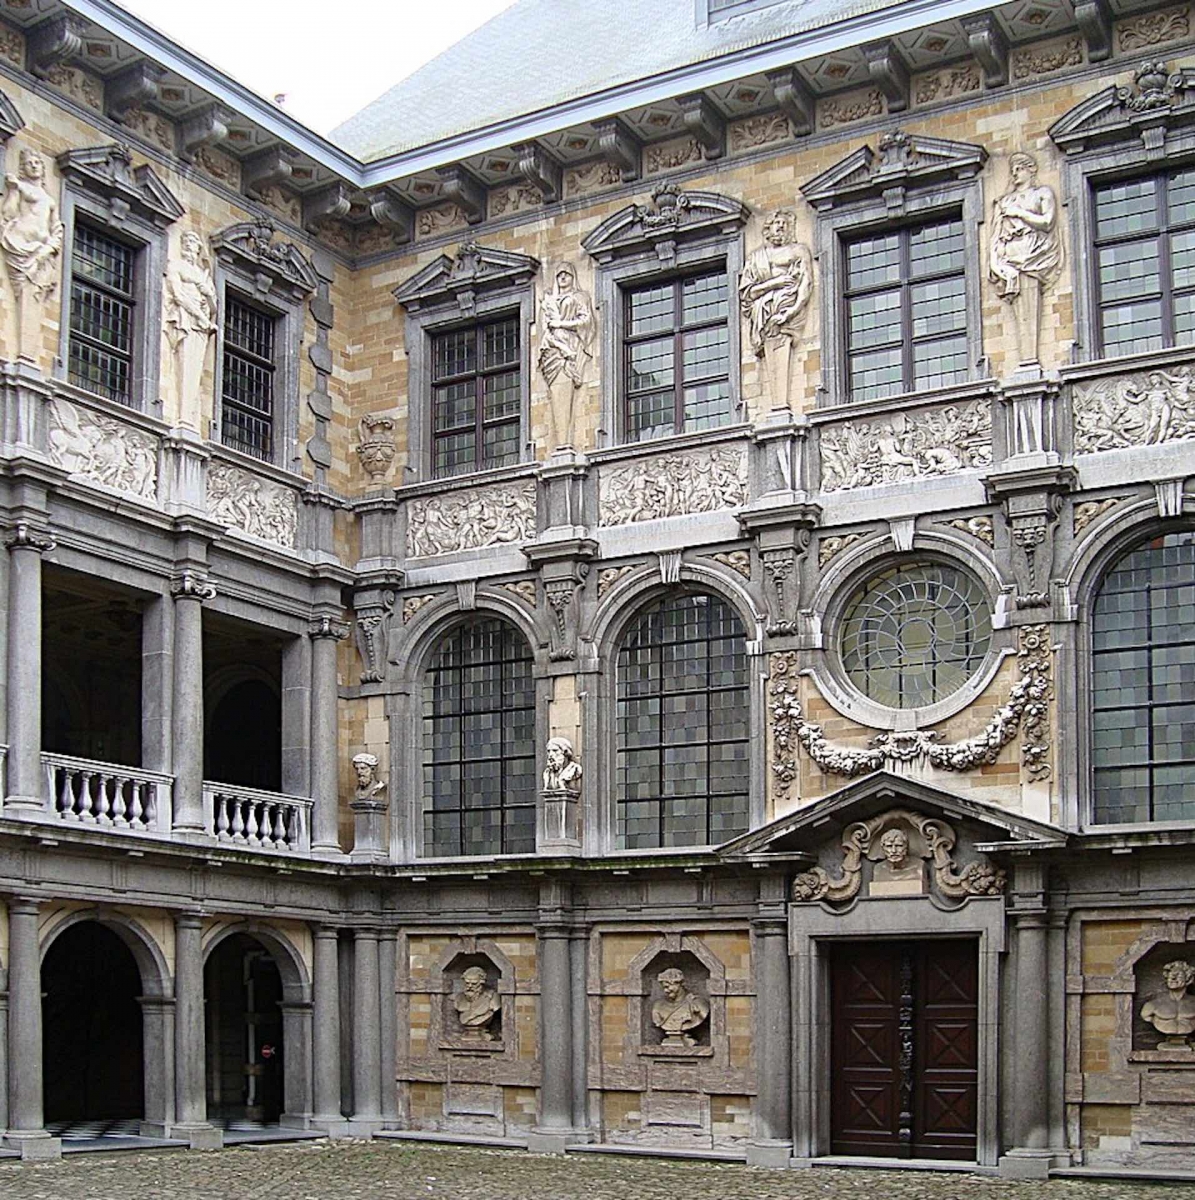 Barocke Hermen im Rubenshaus (Rubenshaus) in Antwerpen, Belgien